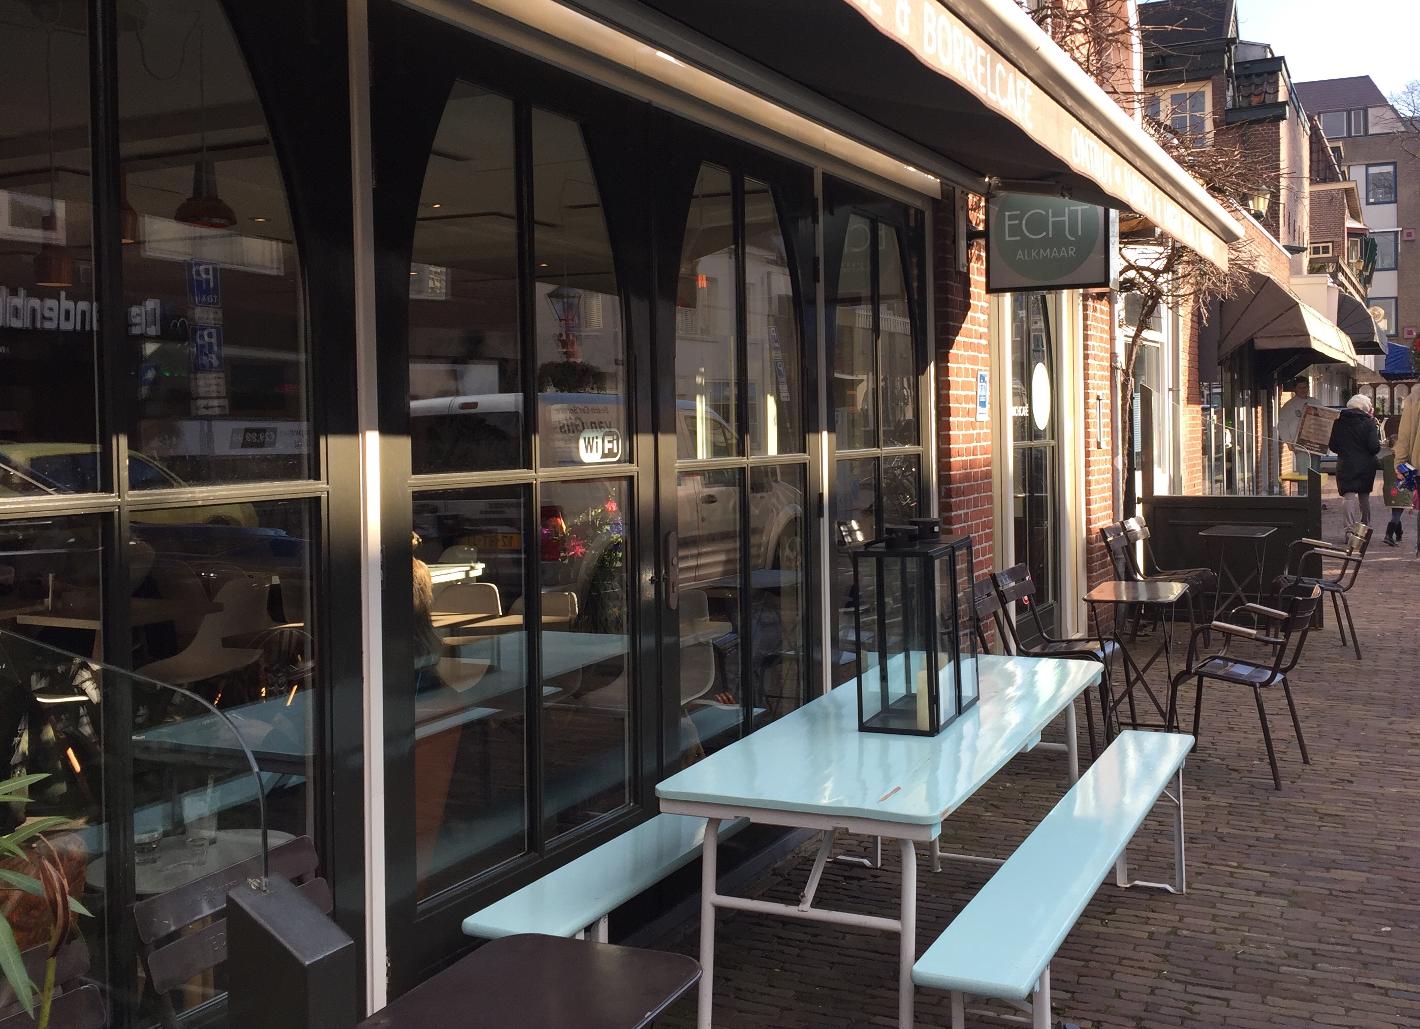 Photo ECHT in Alkmaar, Eat & drink, Lunch - #1